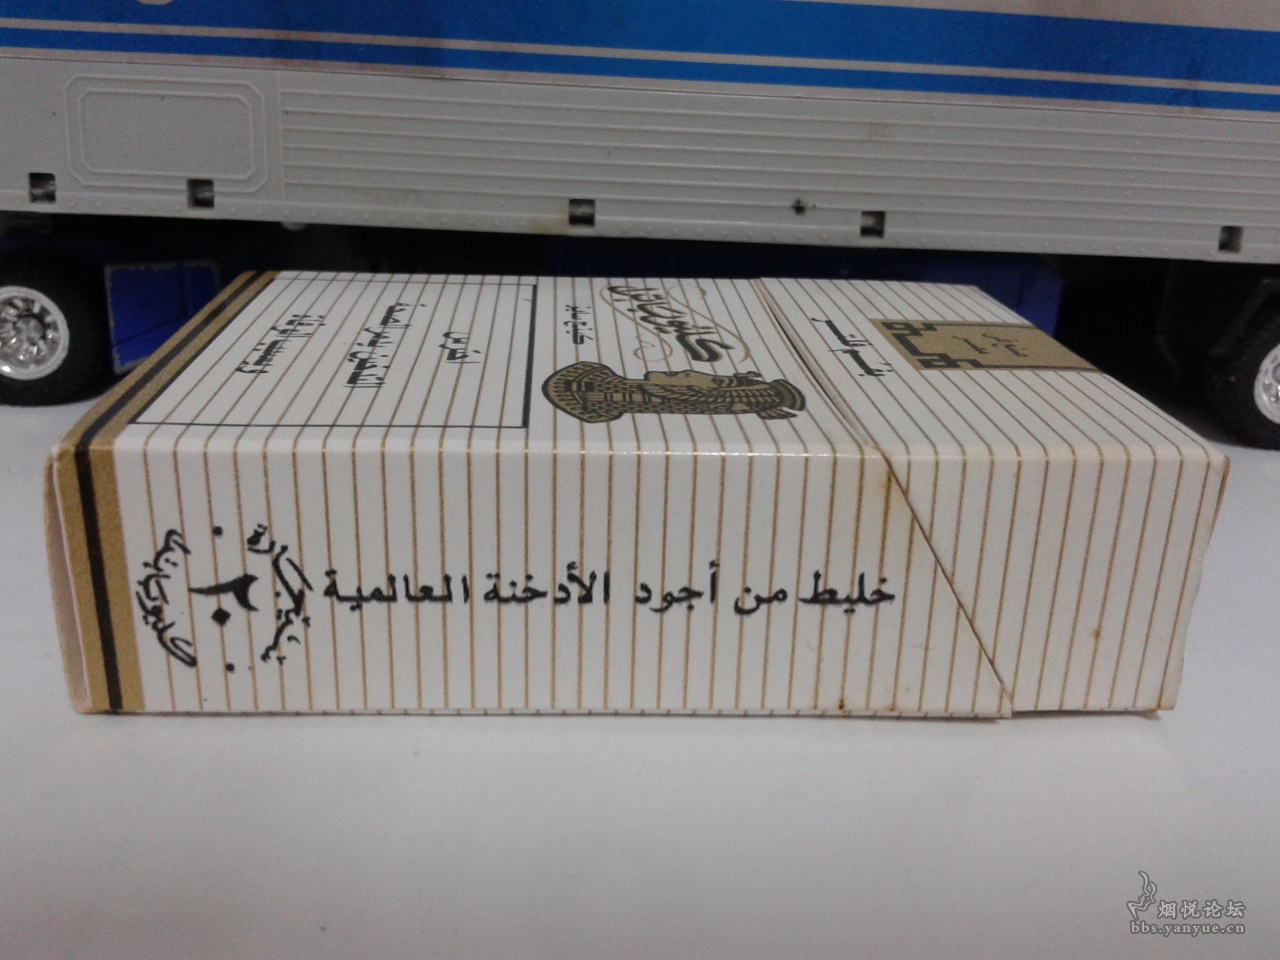 埃及图案烟盒，能装12支-价格:5元-se84942277-烟膏罐/烟丝盒-零售-7788收藏__收藏热线